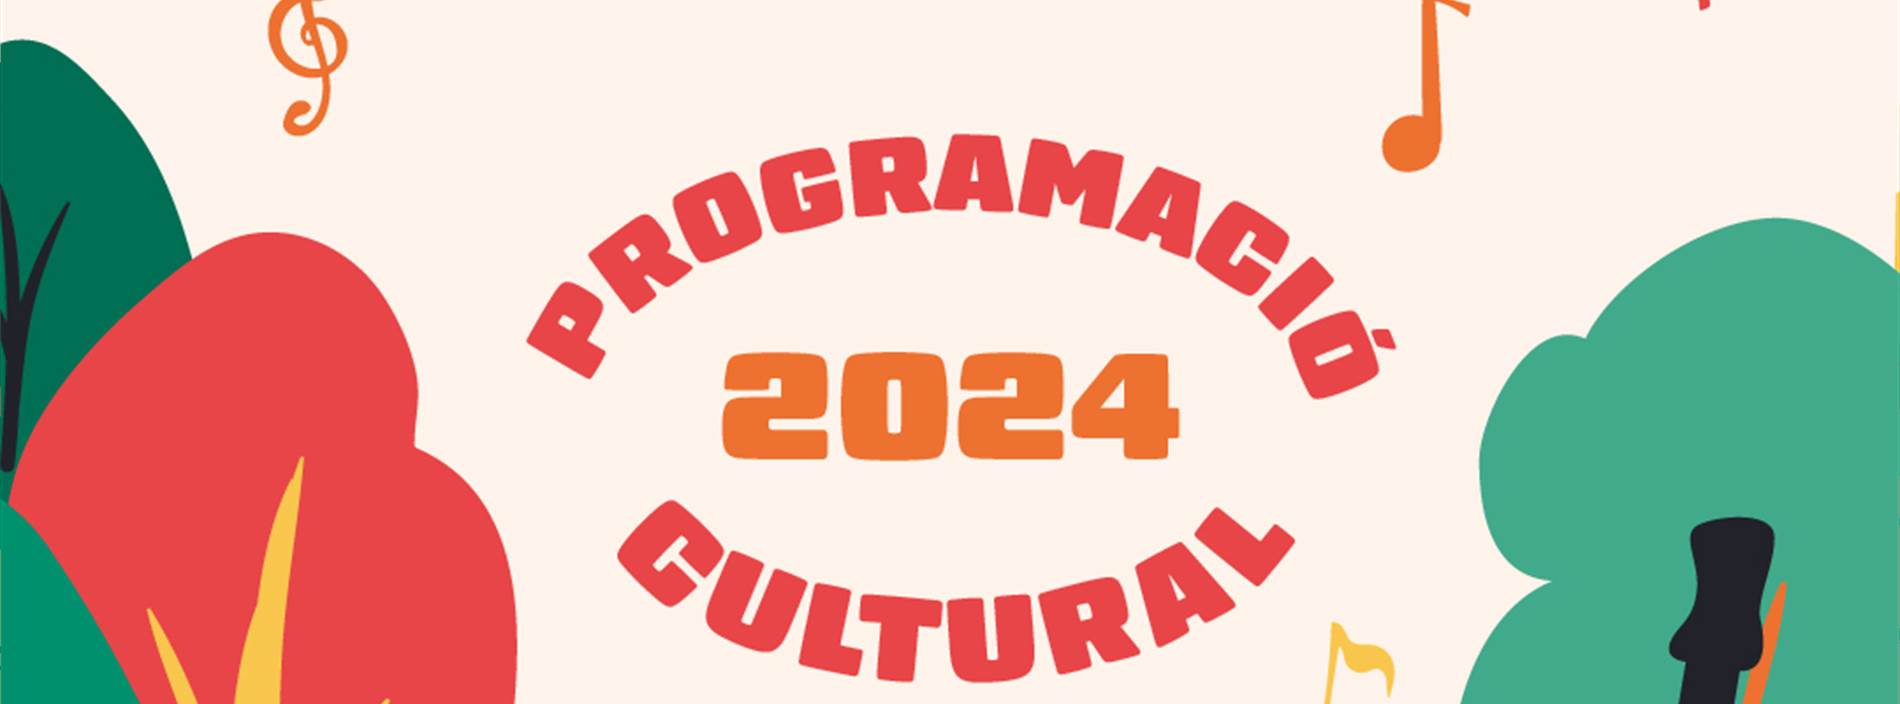 programació cultural estiu 2024